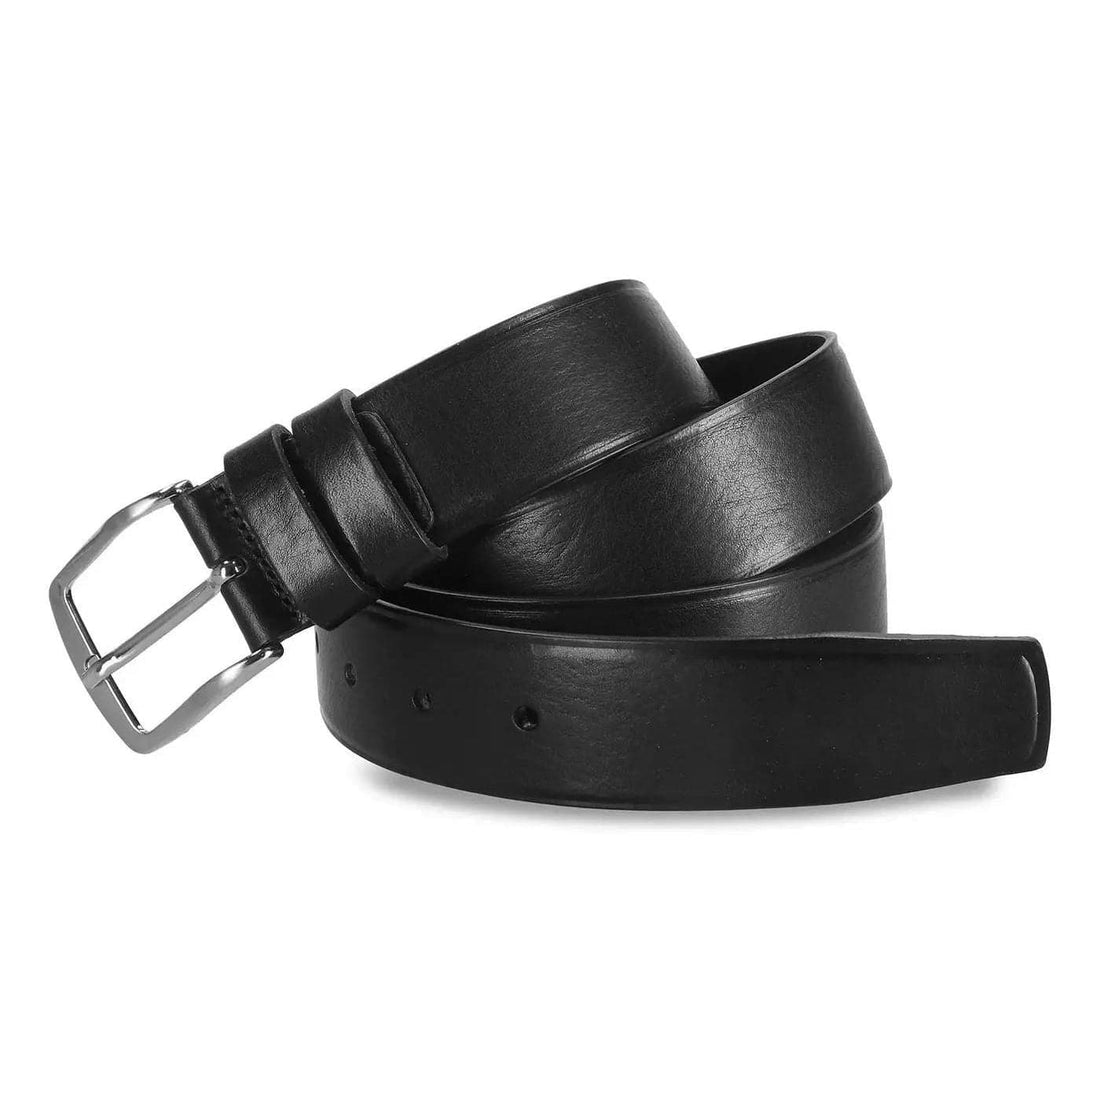 Genuine leather belt - UpSell